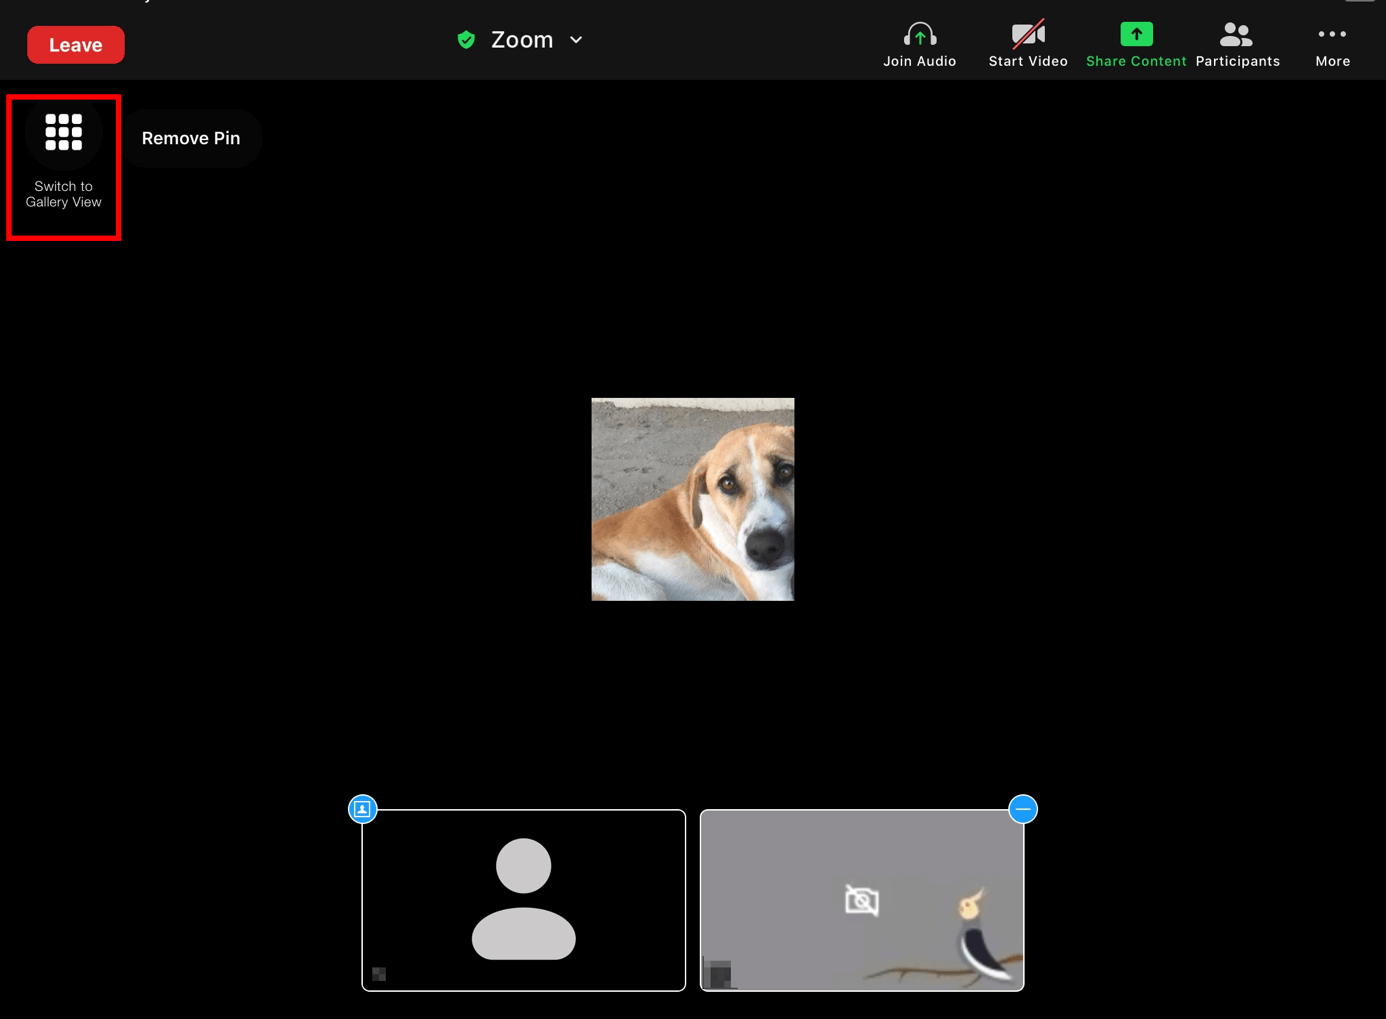 Passare alla vista galleria di Zoom dall’iPad